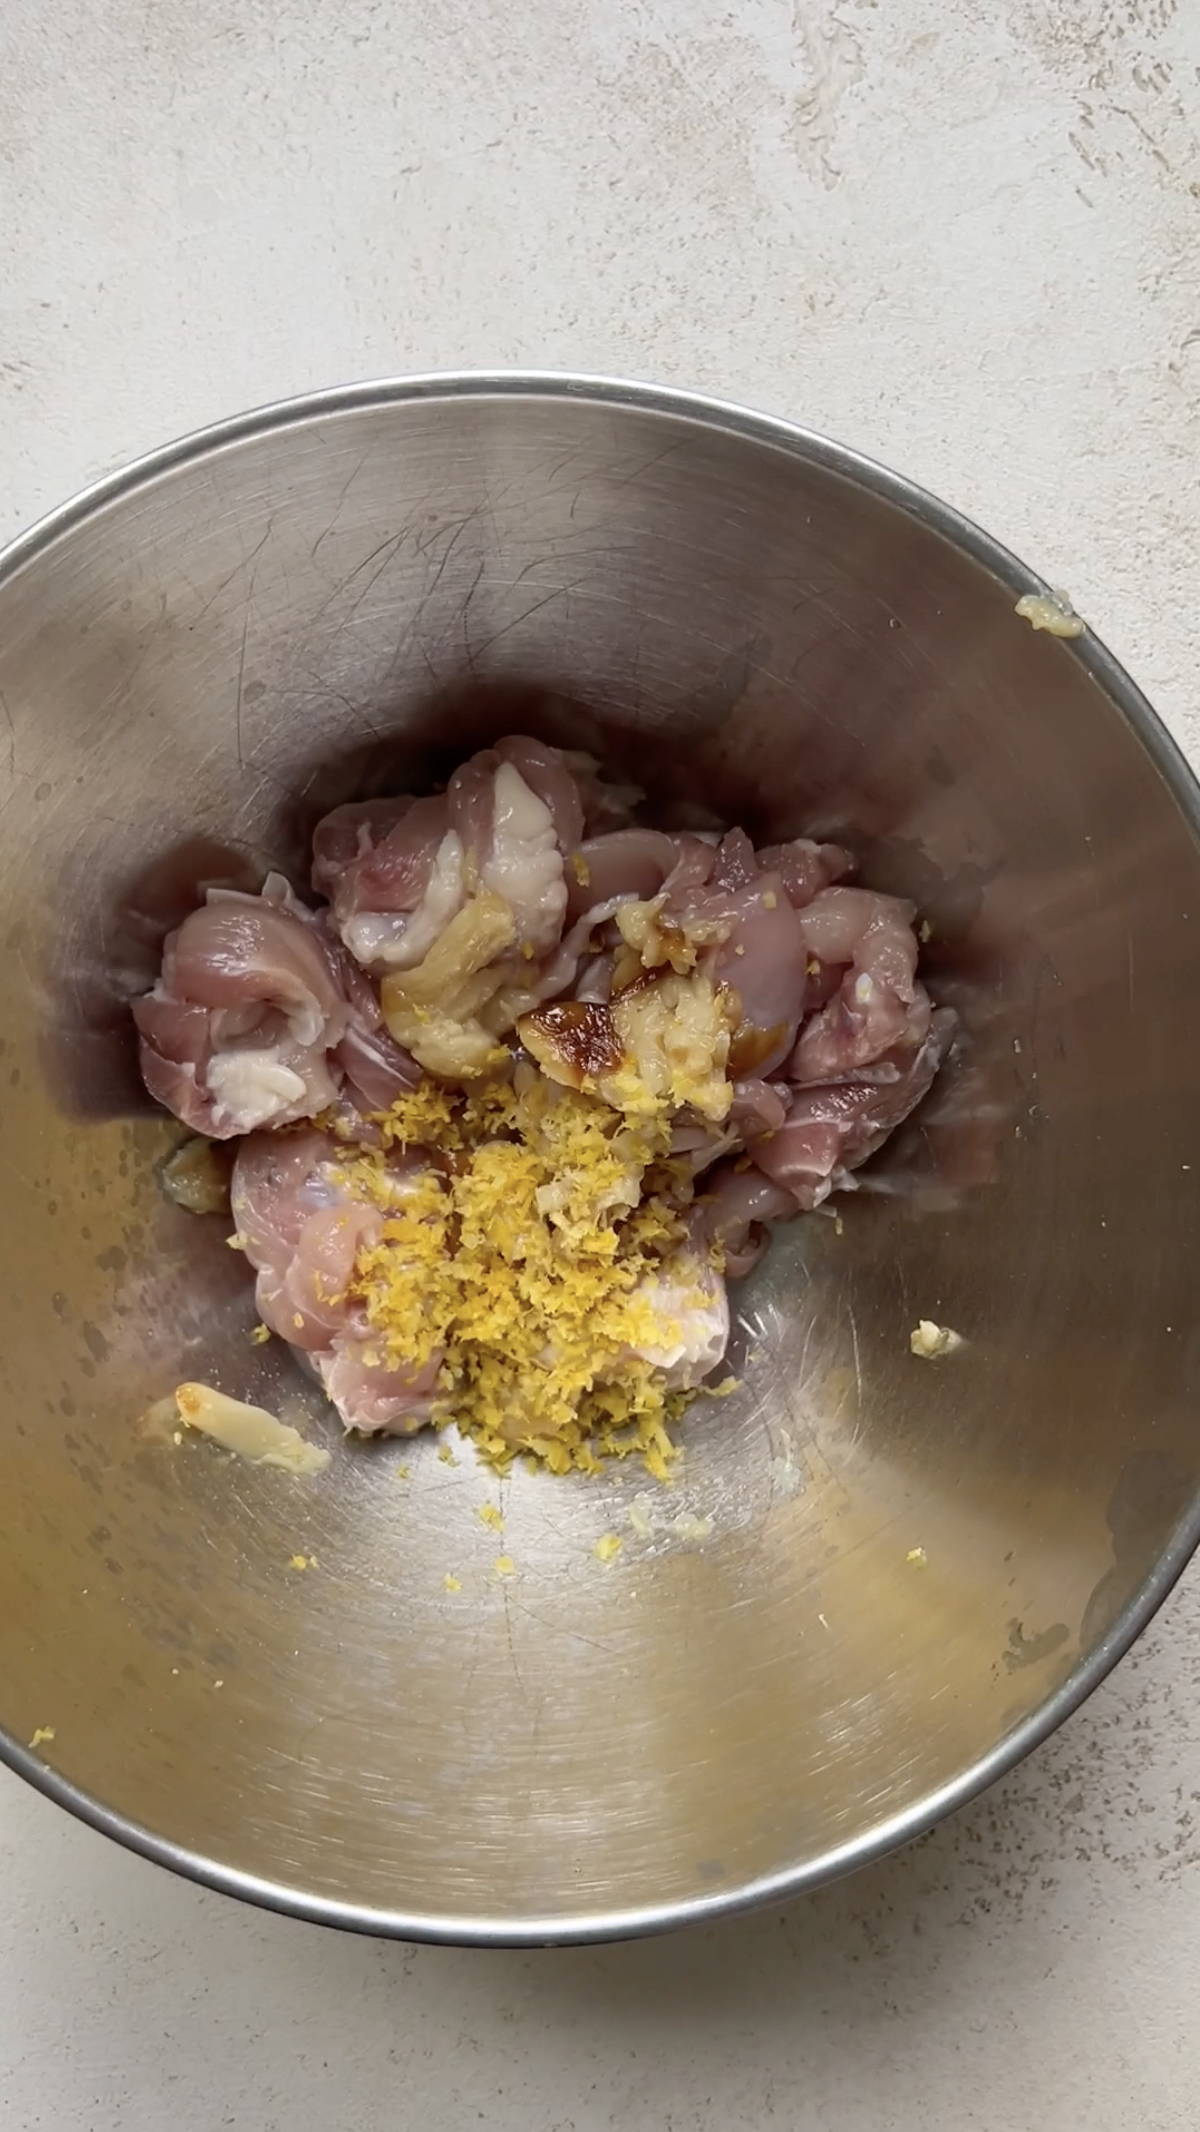 Morceaux de poulet et zestes de citron jaune dans un bol en inox.